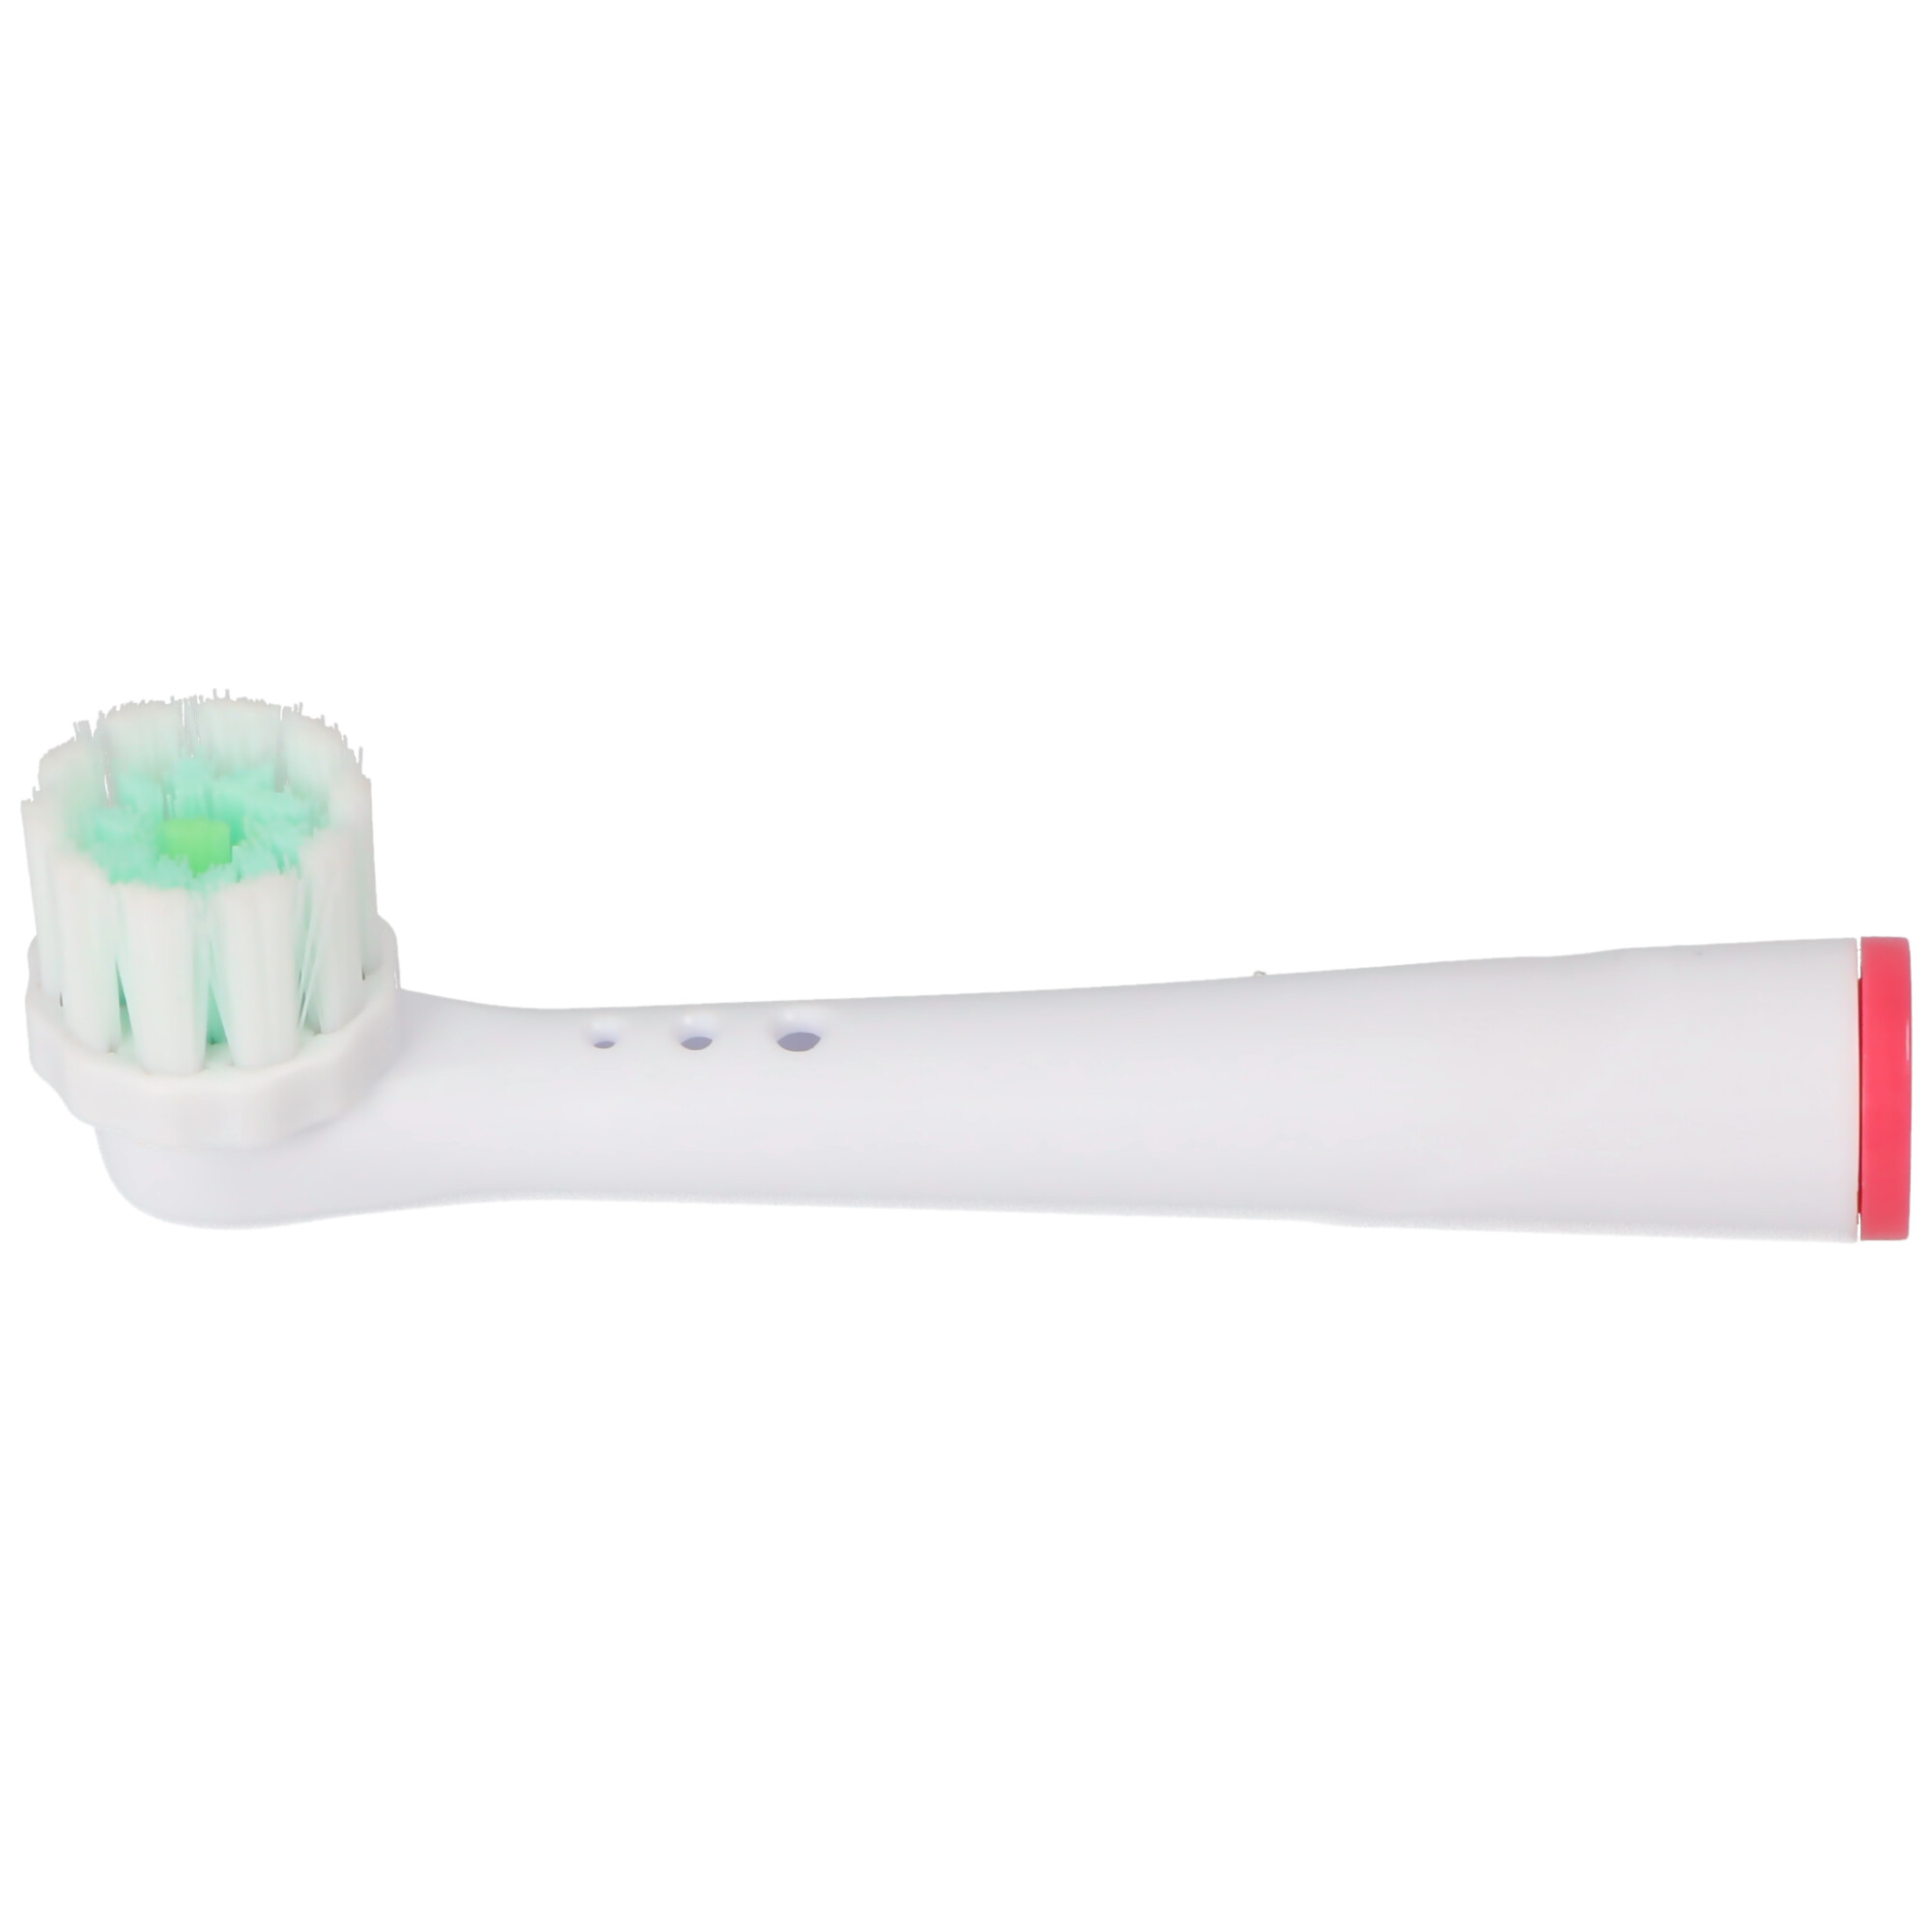 4 Stück 3D Whitening Ersatz-Zahnbürstenkopf für elektrische Zahnbürsten von Oral-B, passend z.B. für Oral-B D10, D12, D16, D12 und viele andere Modelle von Oral-B